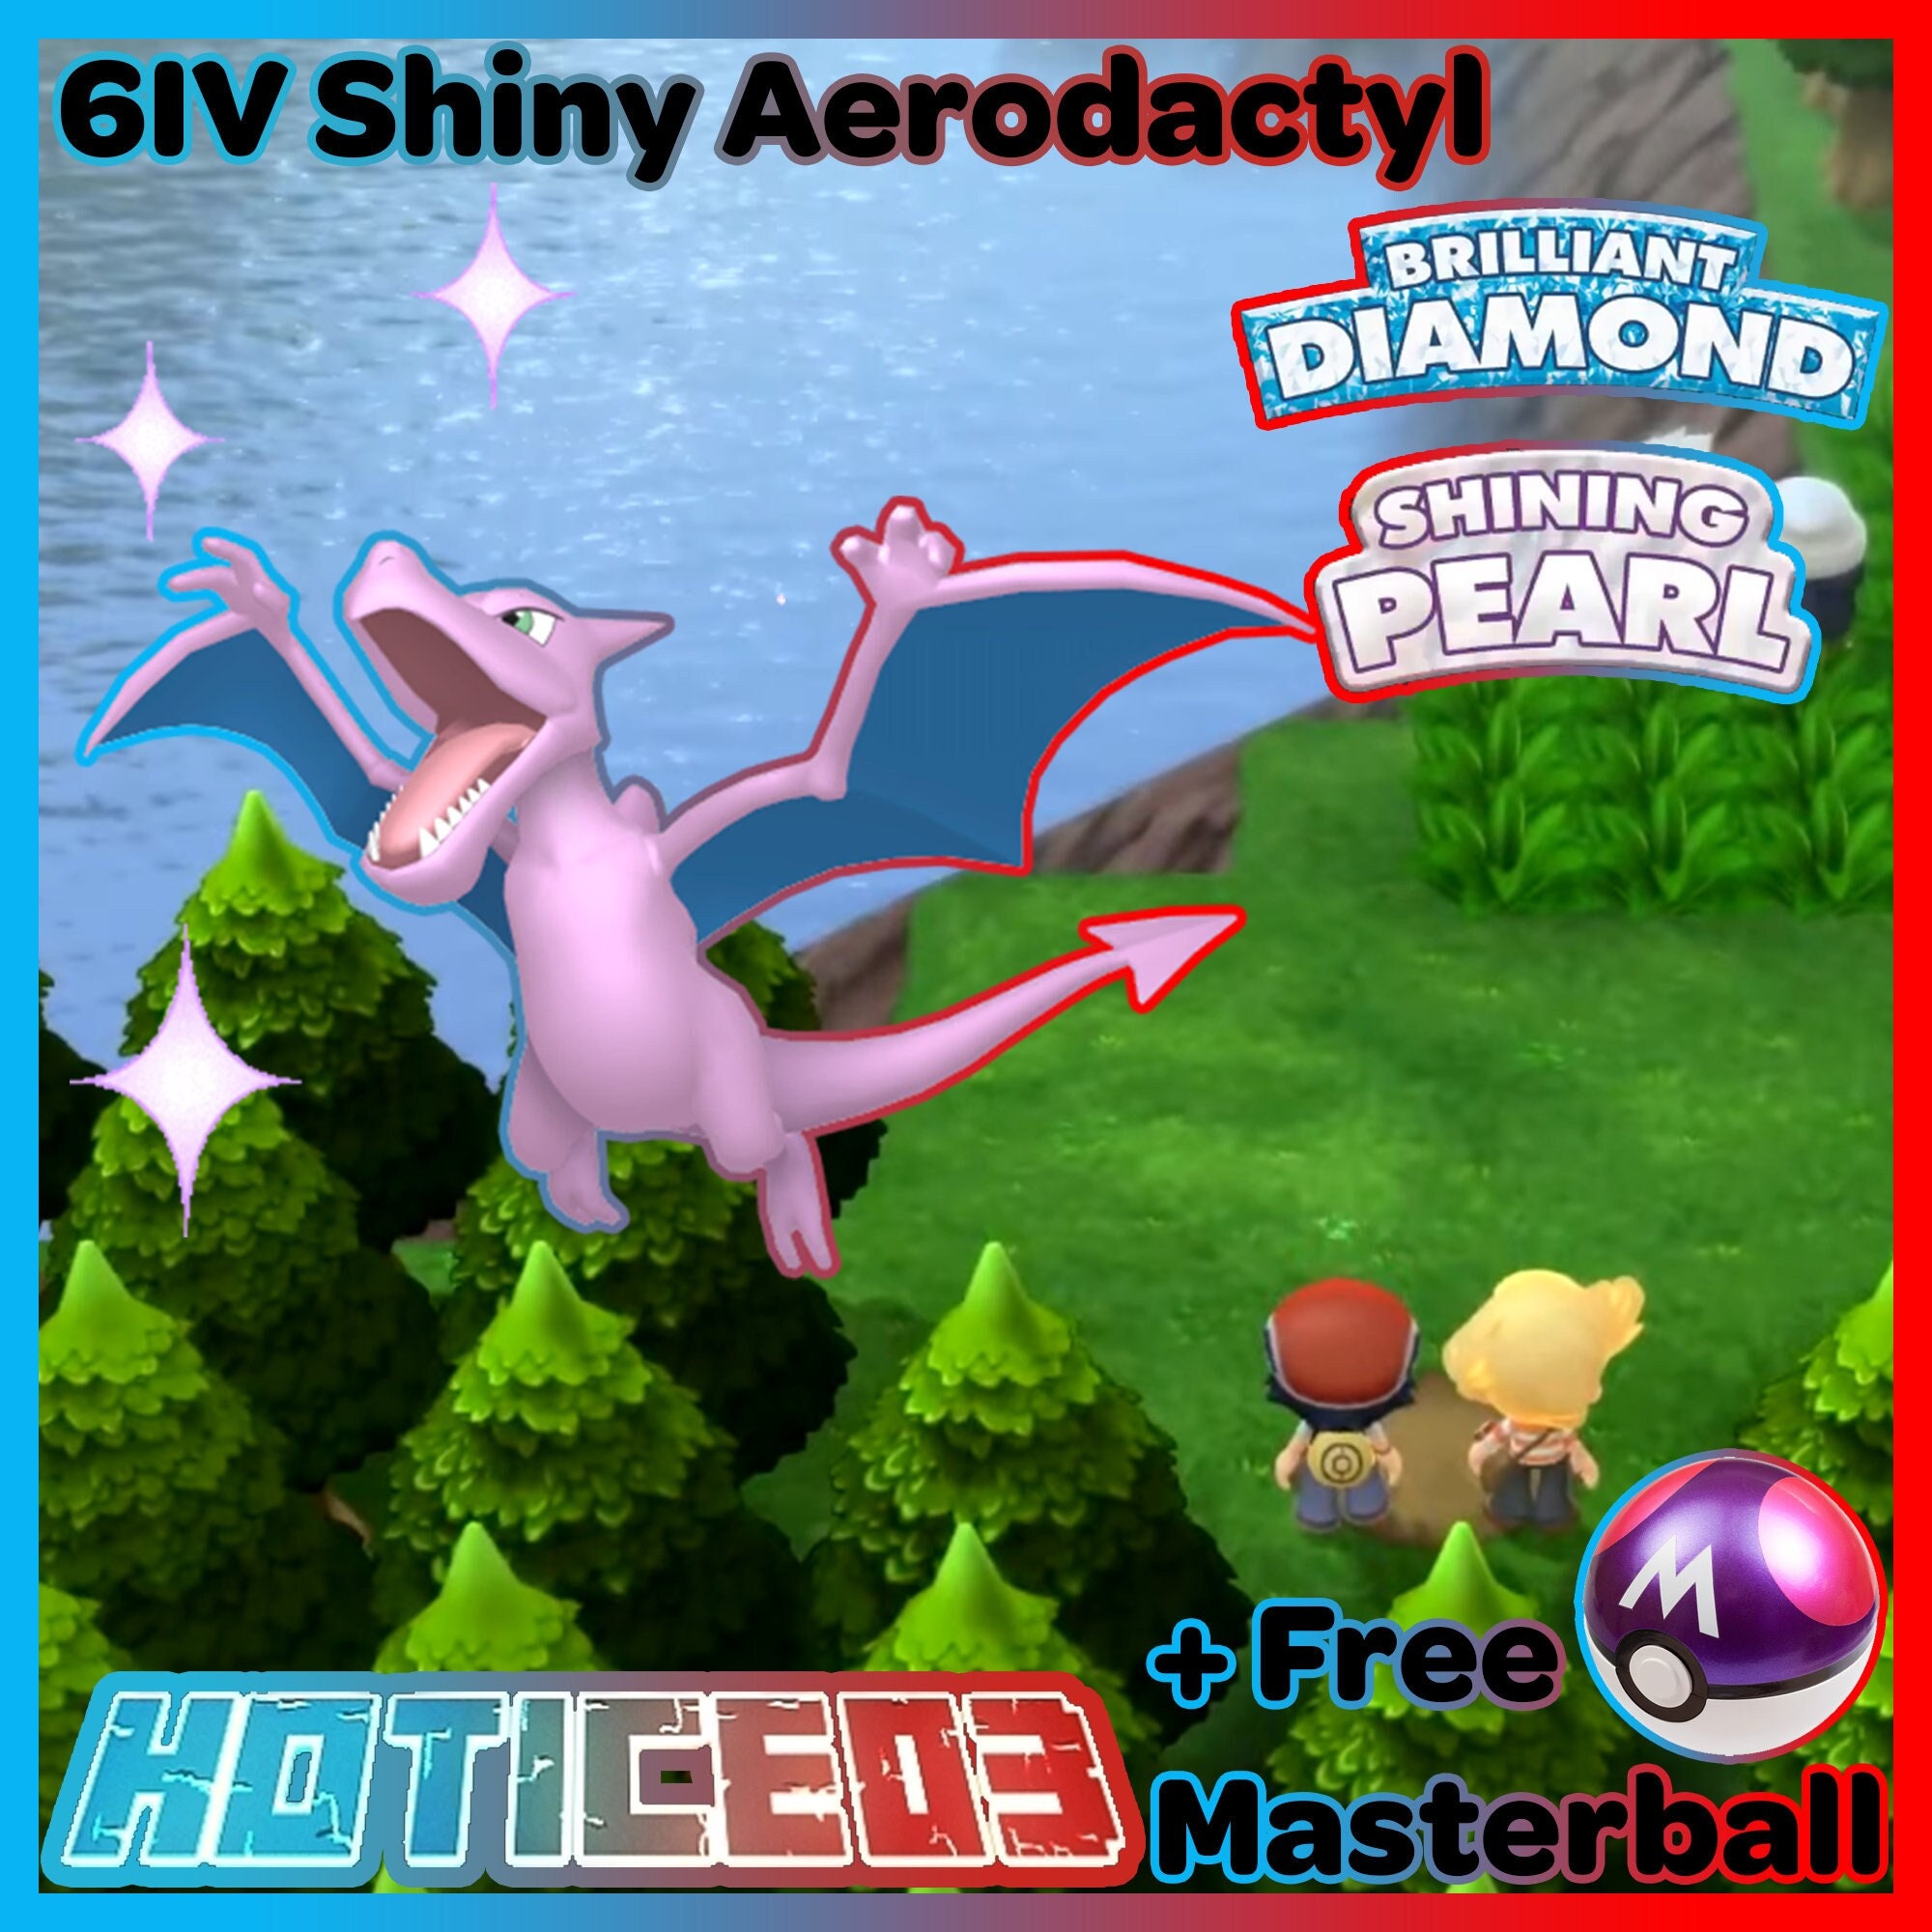 Shiny AERODACTYL 6IV / Pokemon Brilliant Diamond and Shining